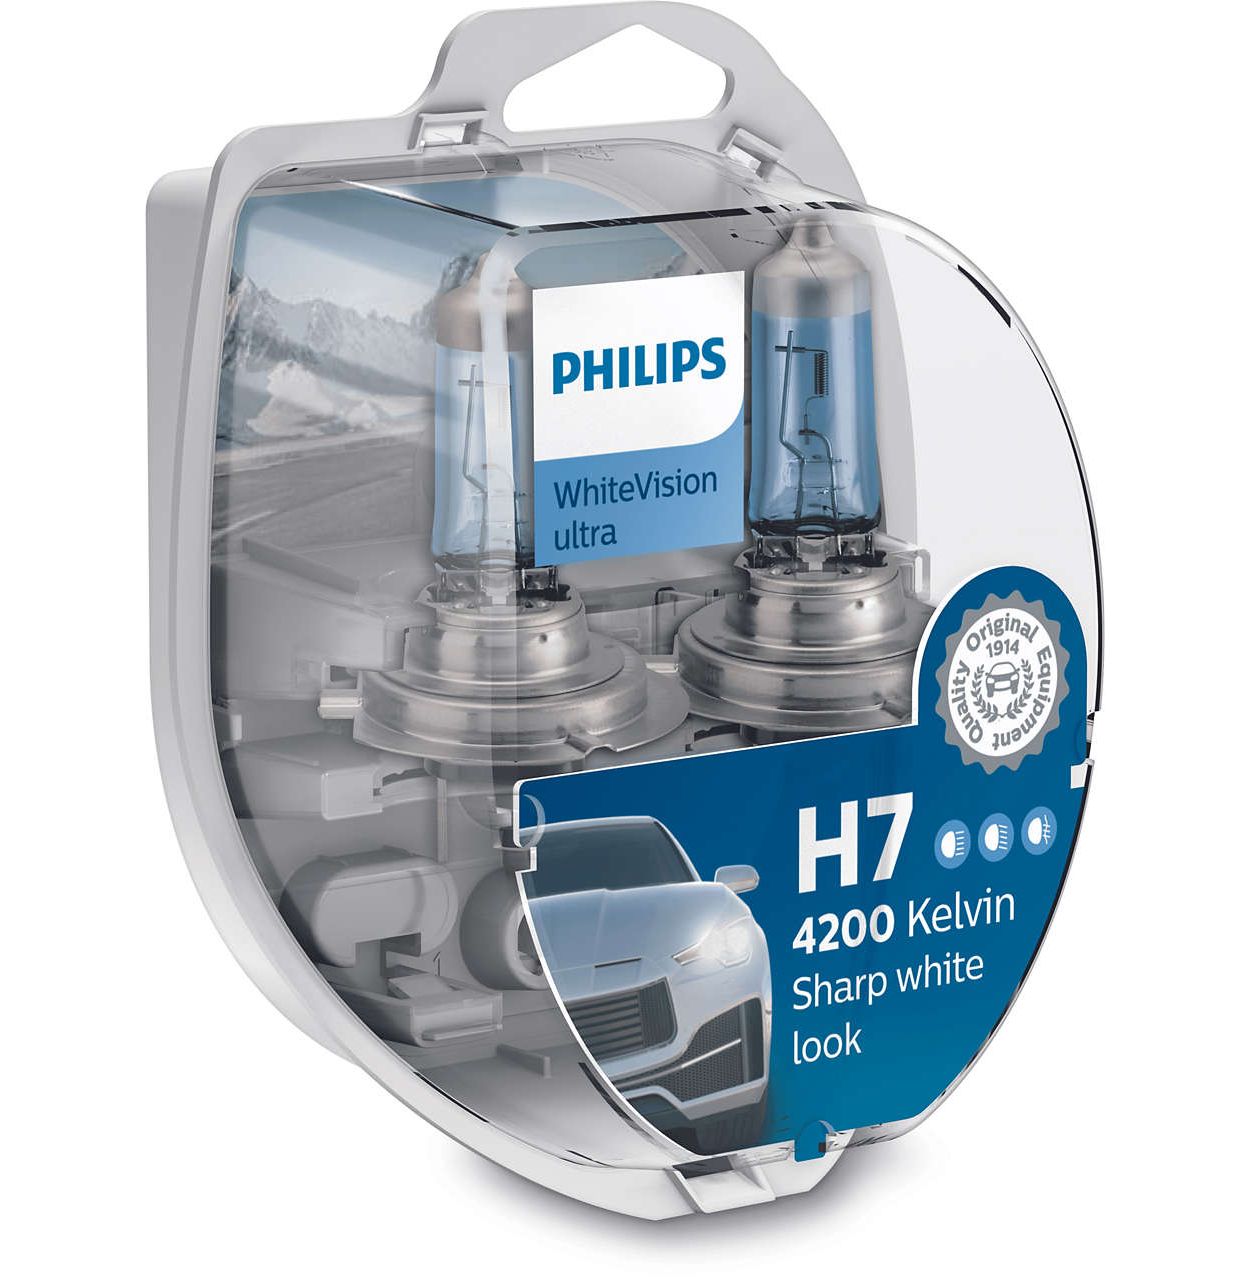 Ampoule pour voiture Philips ECOVISION 12972LLECOB1 H7 PX26d/55W/12V